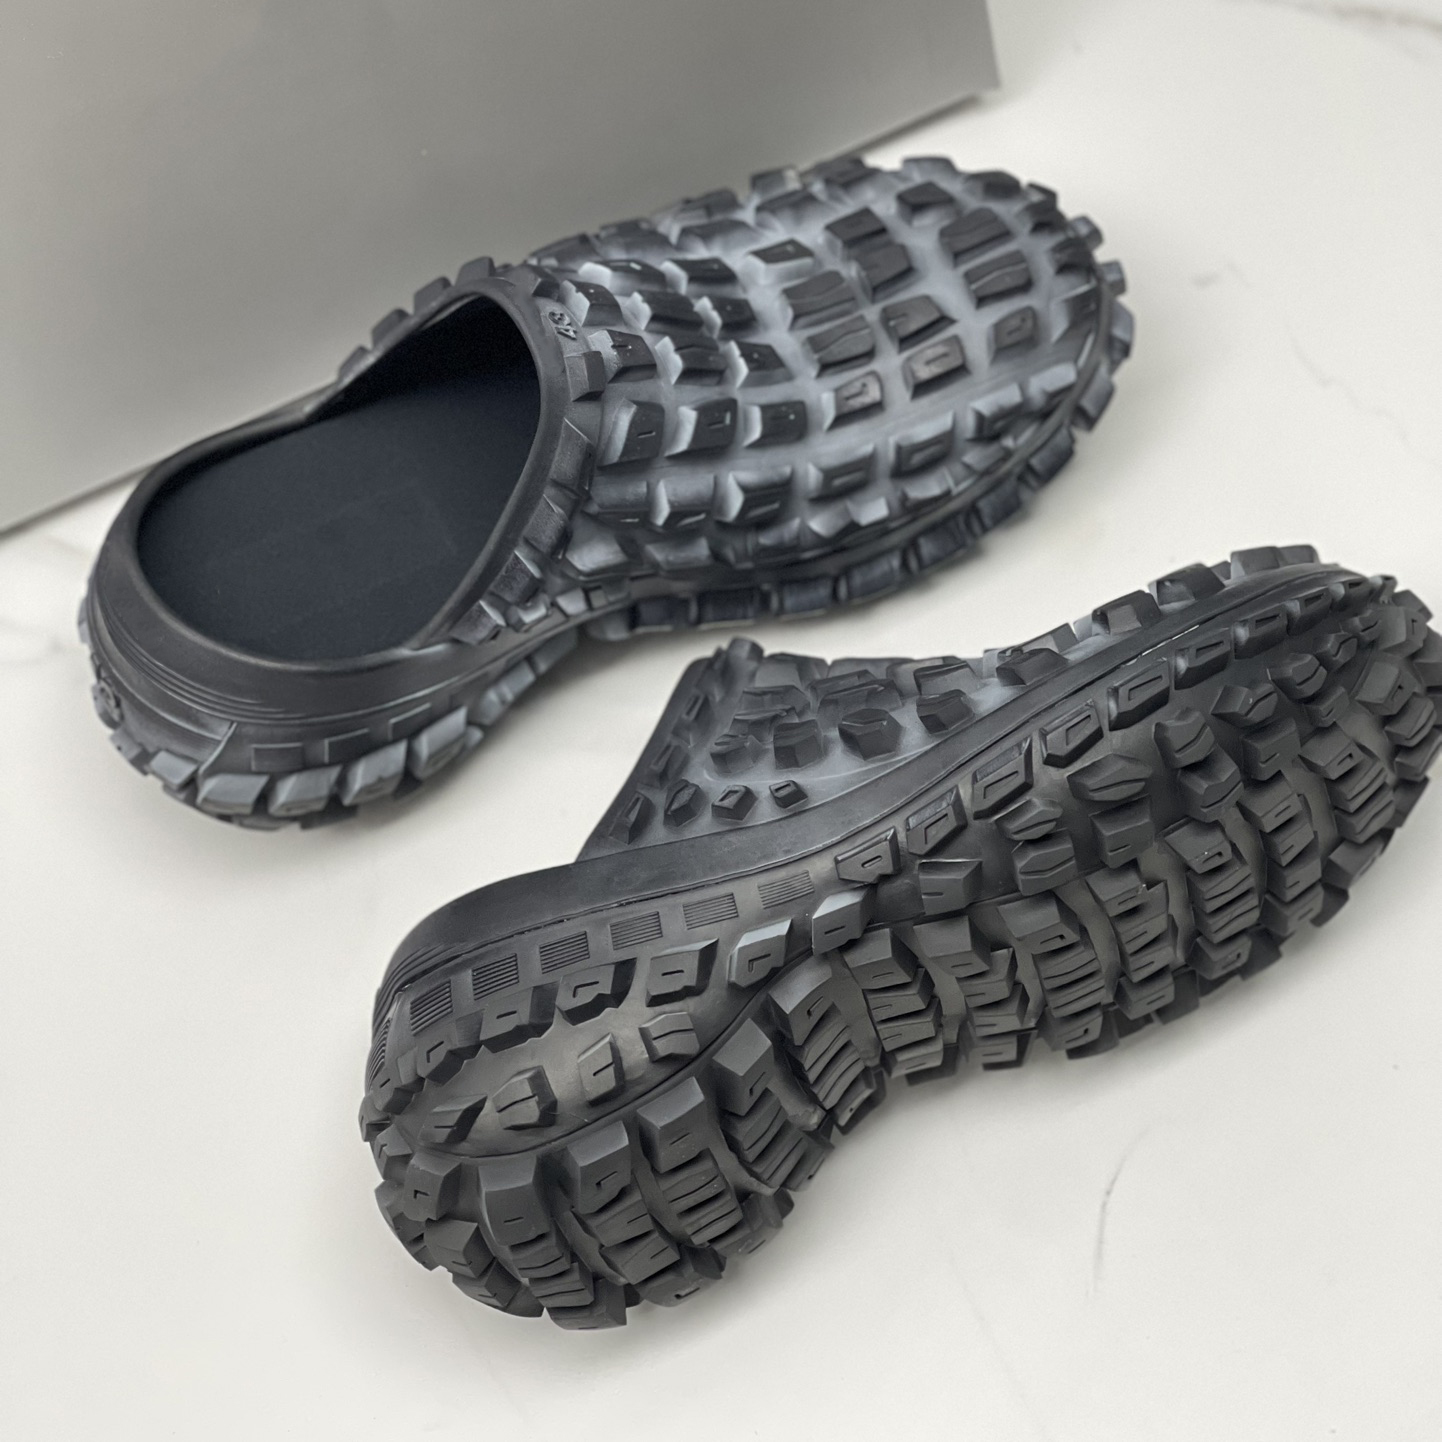 Designer homens Black Tire Slipper Sandals Plataforma Sapatos Bump Texture Anti-Slip Fashion Slippers de verão 39-45 Sandálias de tamanho de tamanho